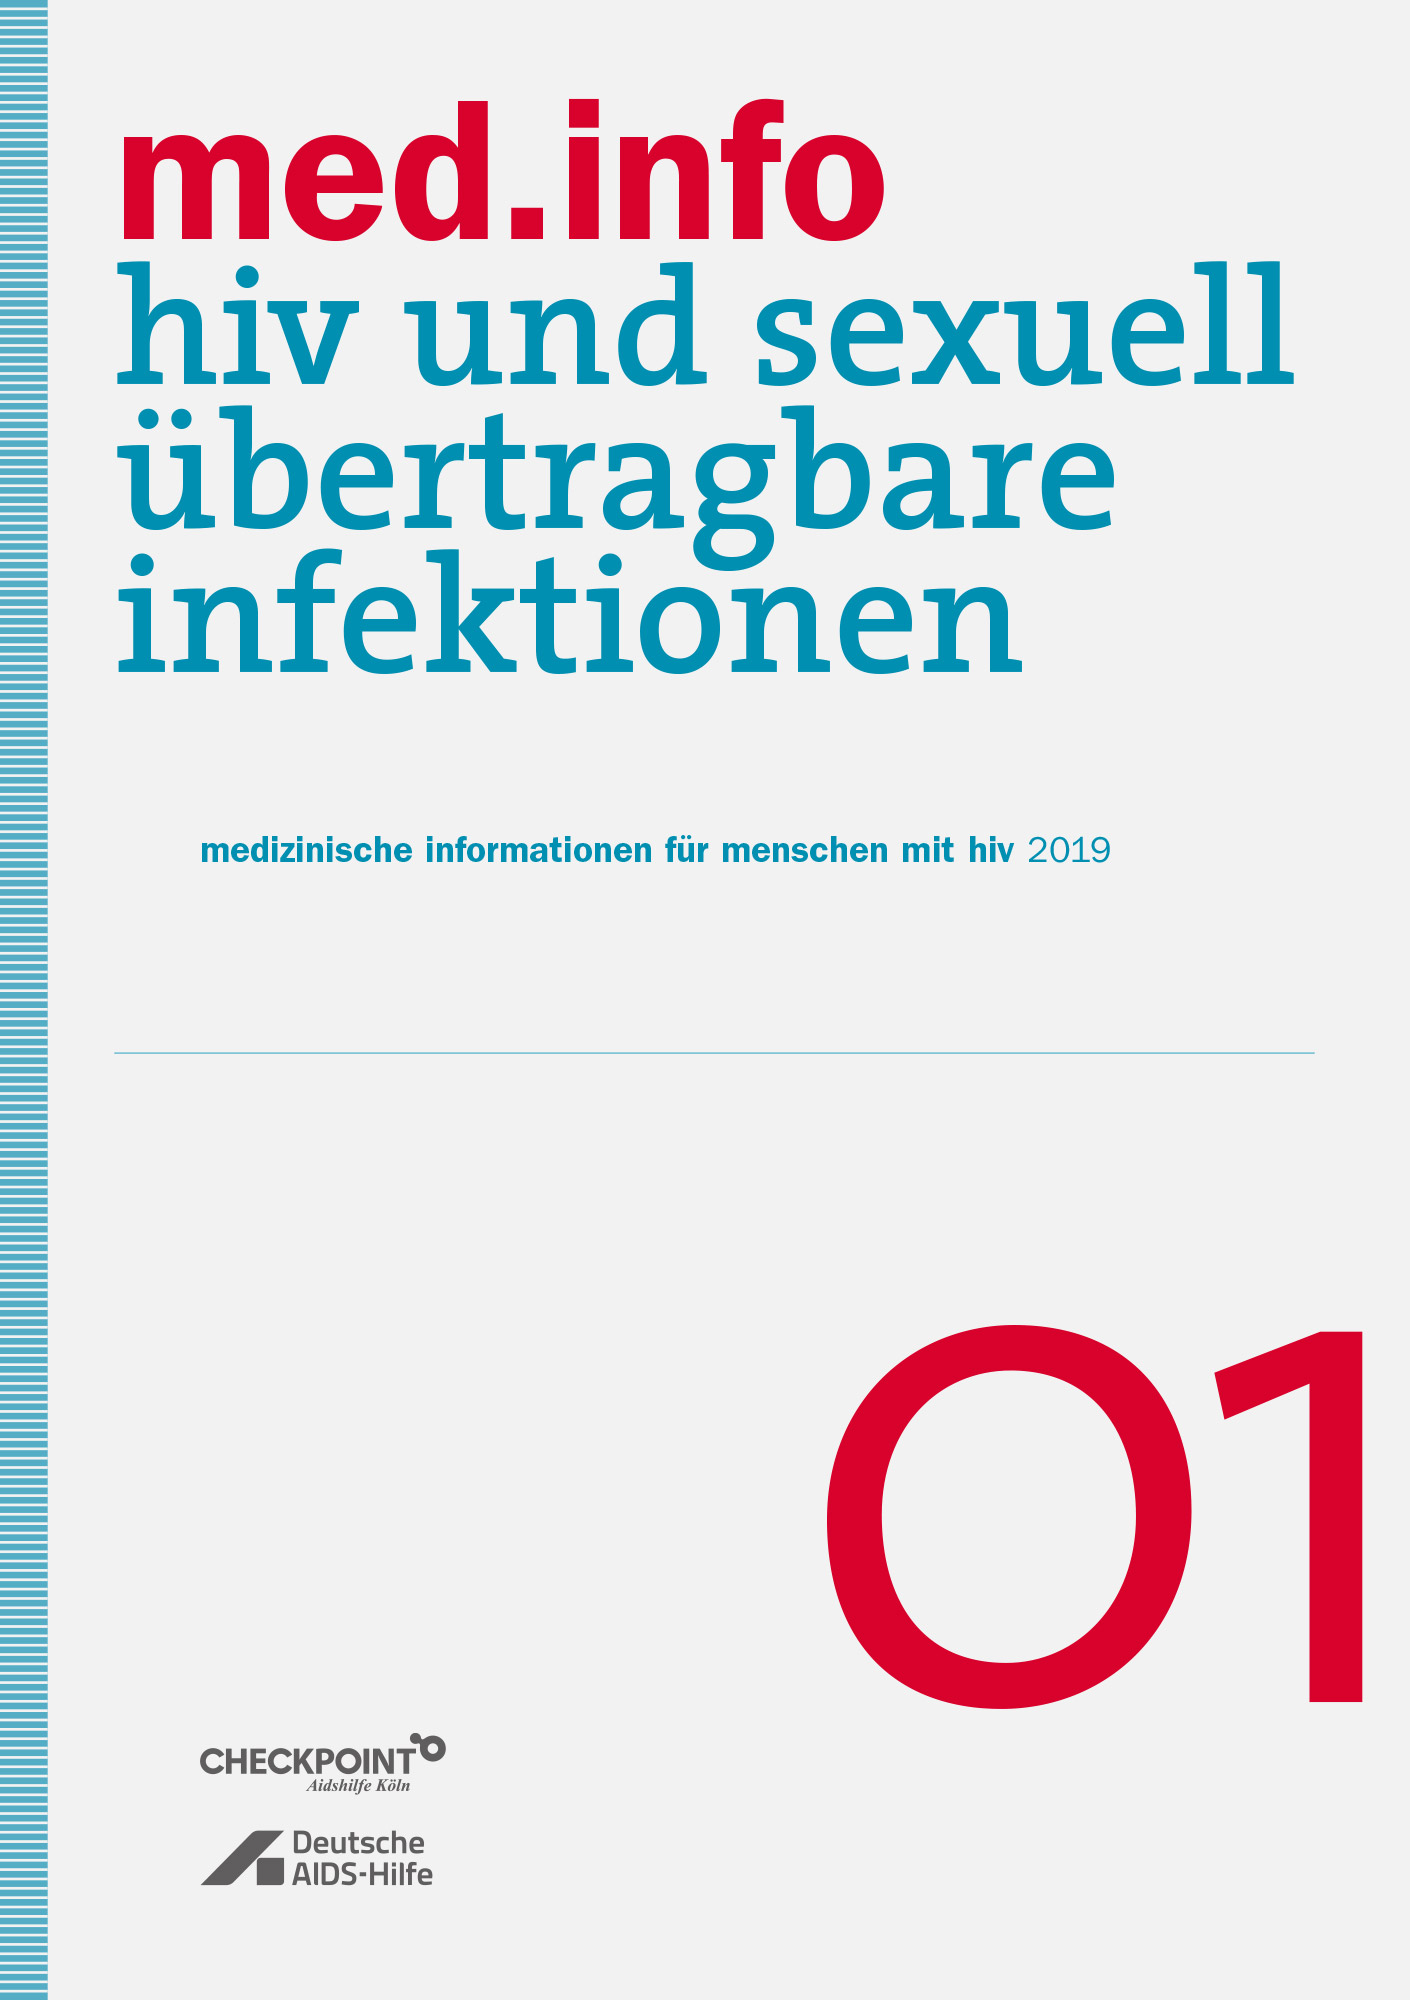 Titelseite der Broschüre "med.info - hiv und sexuell übertragbare infektionen"